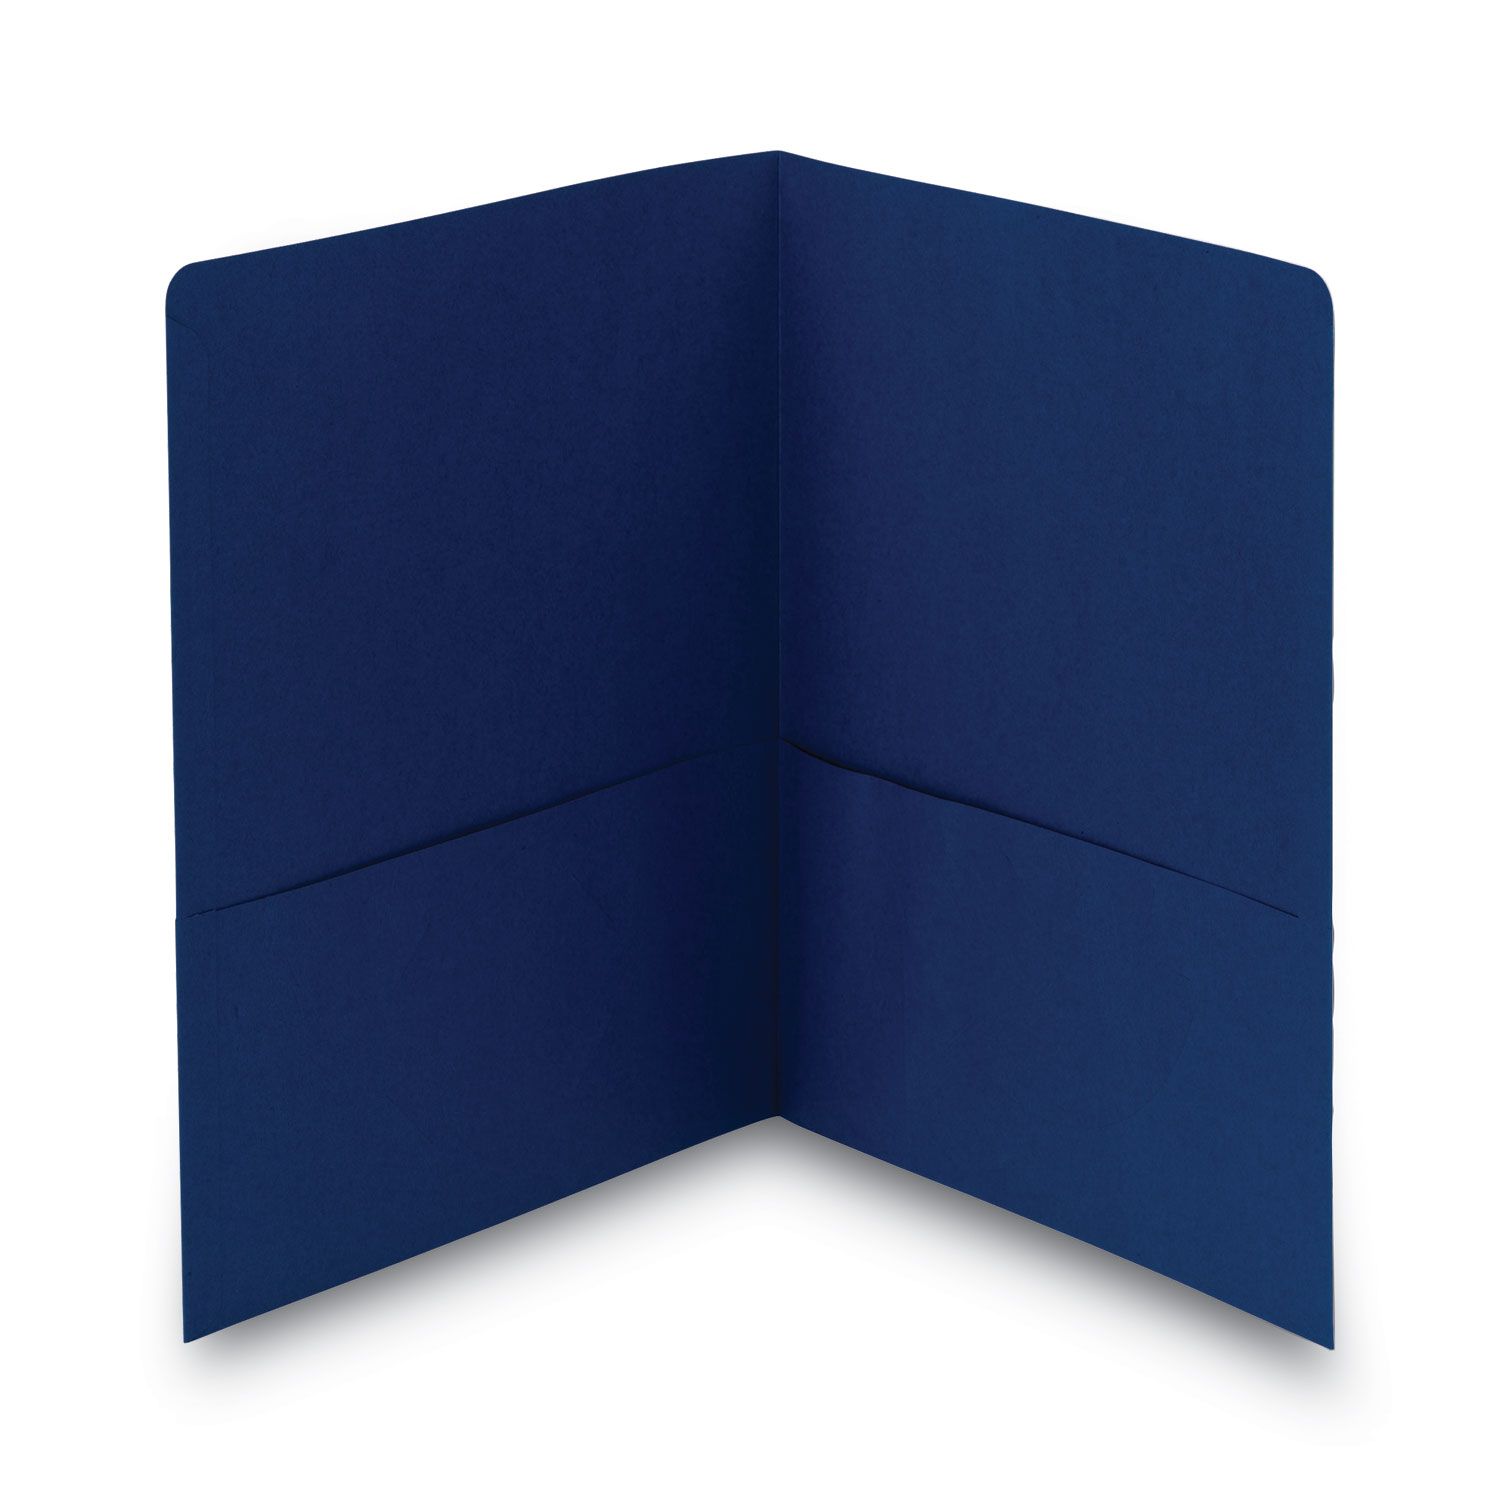 2-Pocket Textured Paper Folders, Green, Pack Of 10 - Zerbee